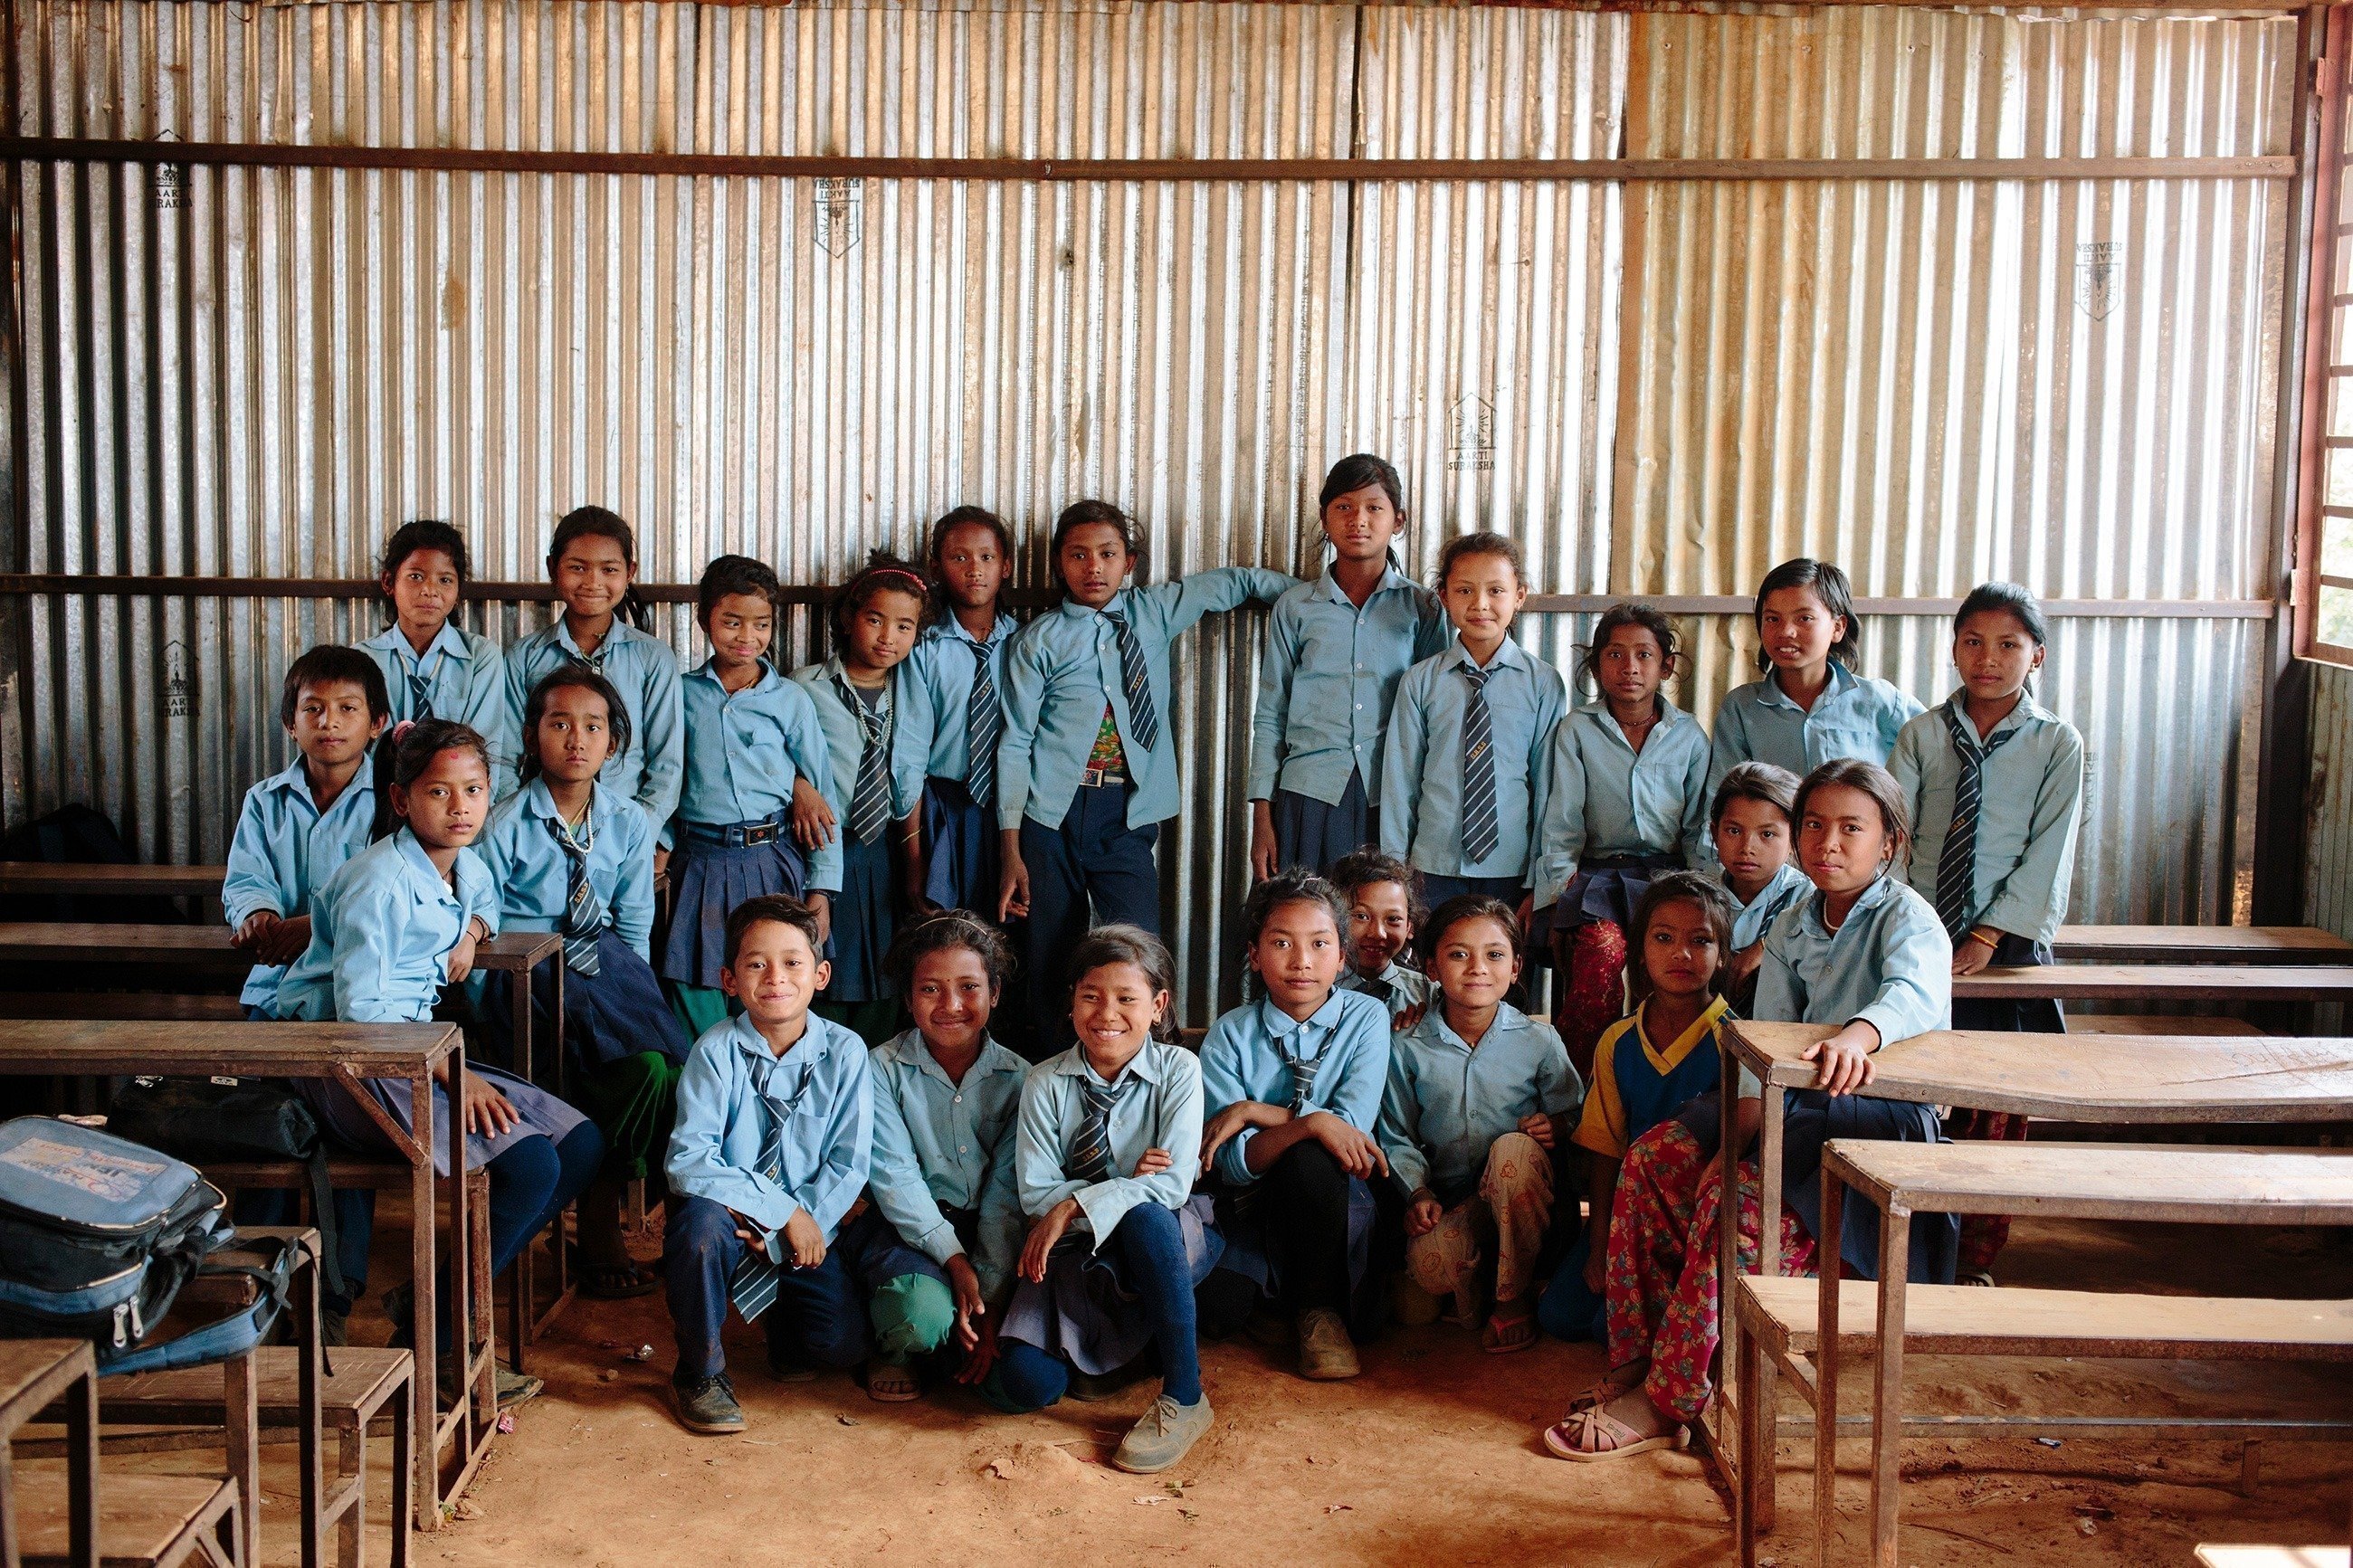 Una classe di bambini in uniforme blu.